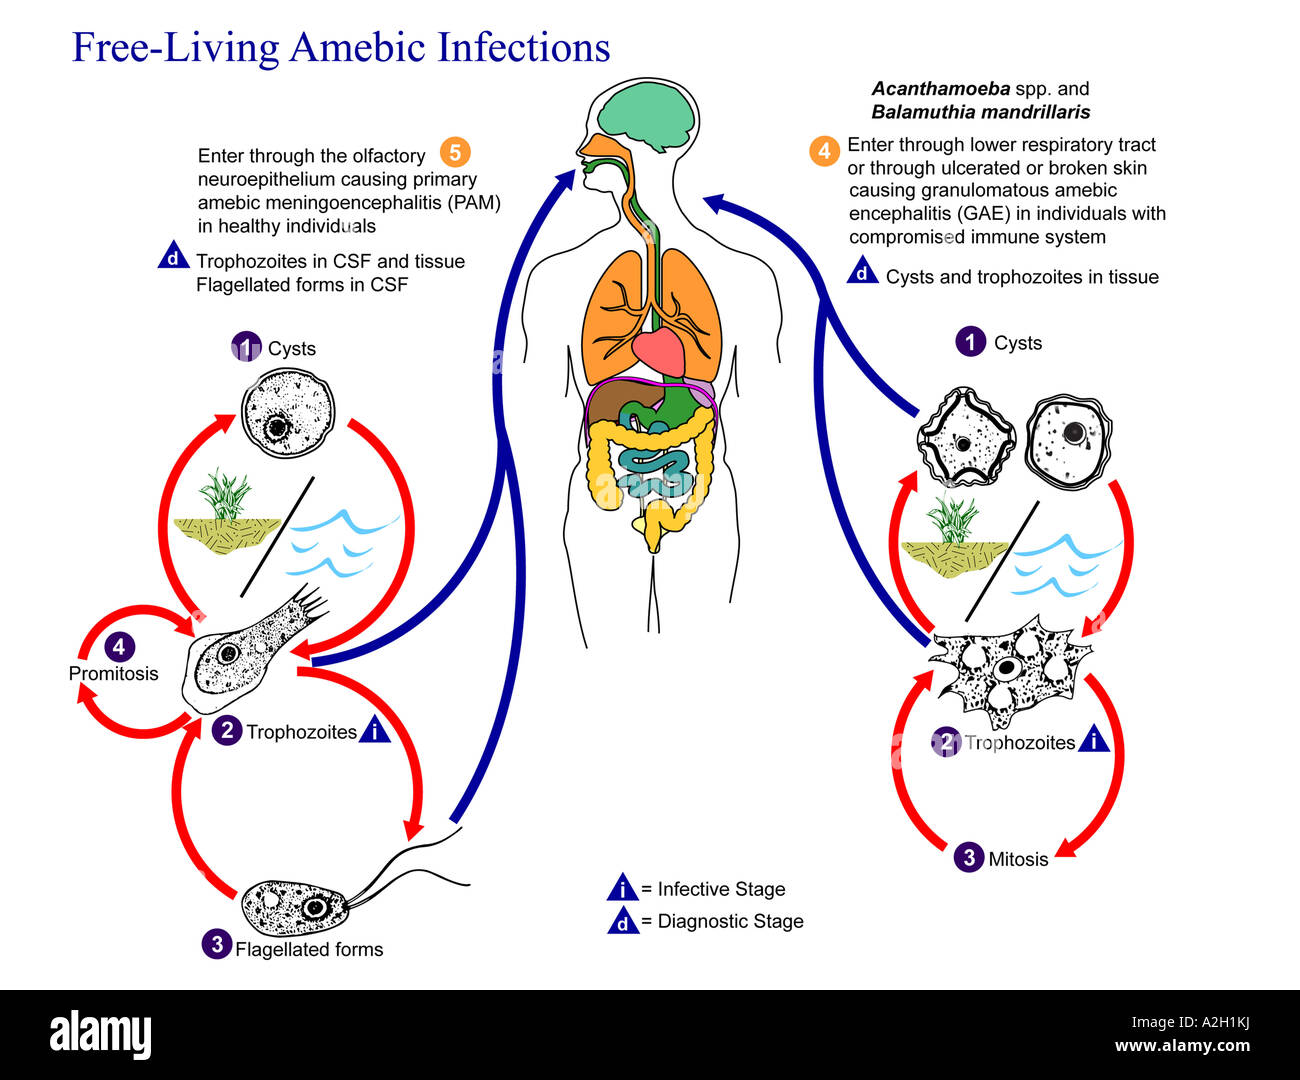 Darstellung des Lebenszyklus der parasitären Agenten verantwortlich für die Entstehung von frei lebenden Amöben-Infektionen Naegleria fowleri Stockfoto